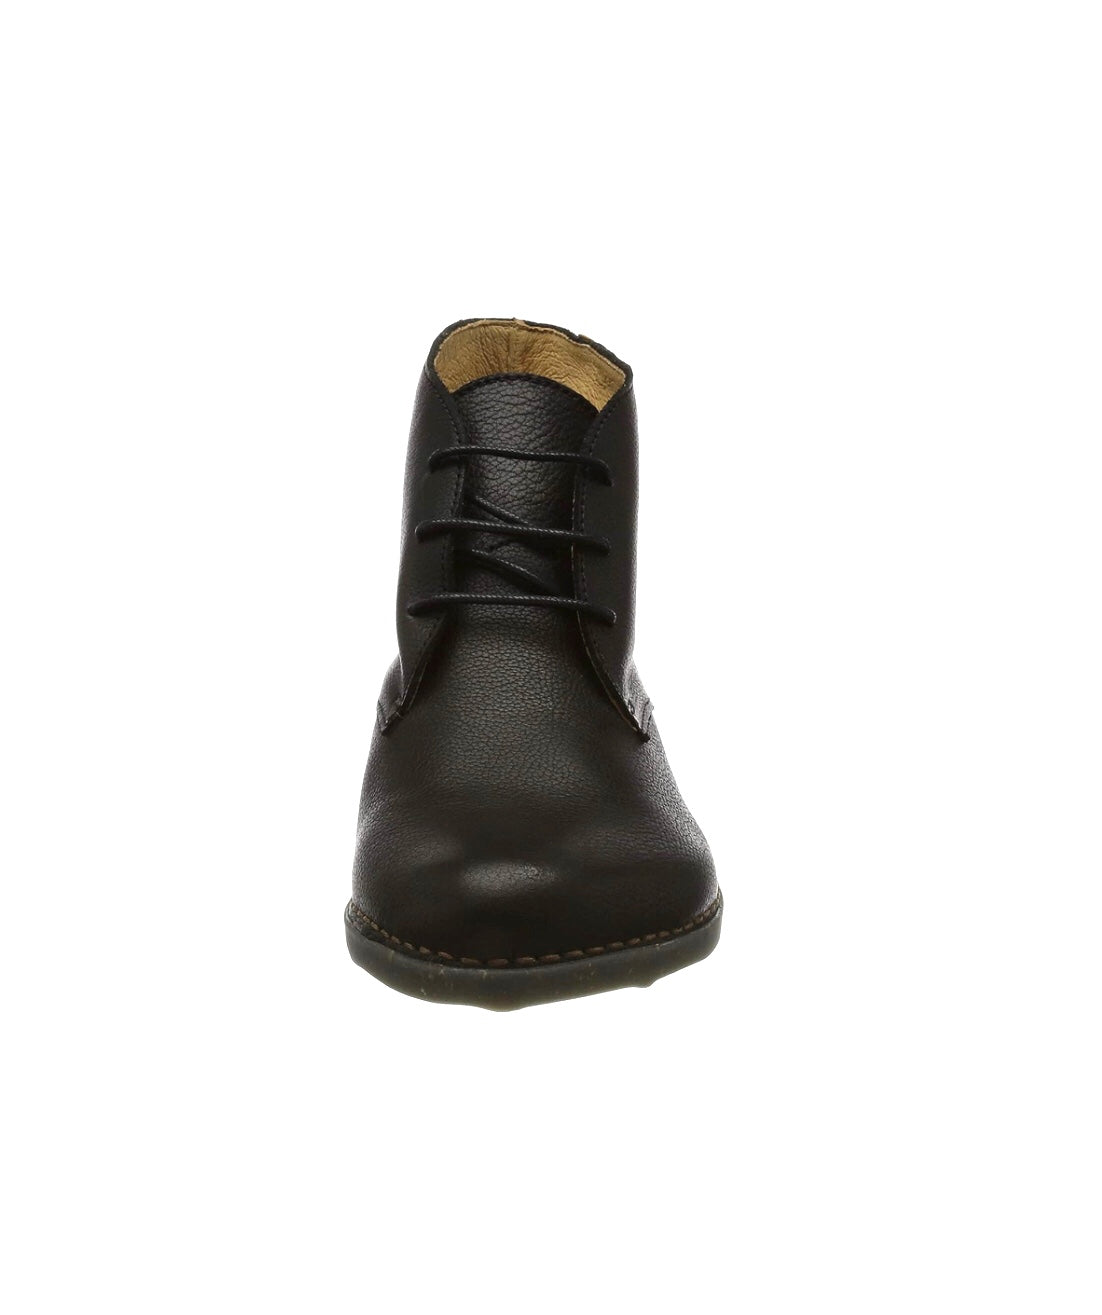 El Naturalista 5490 Black Sylvan 3 Eyelet Ankle Boot Made In Spain